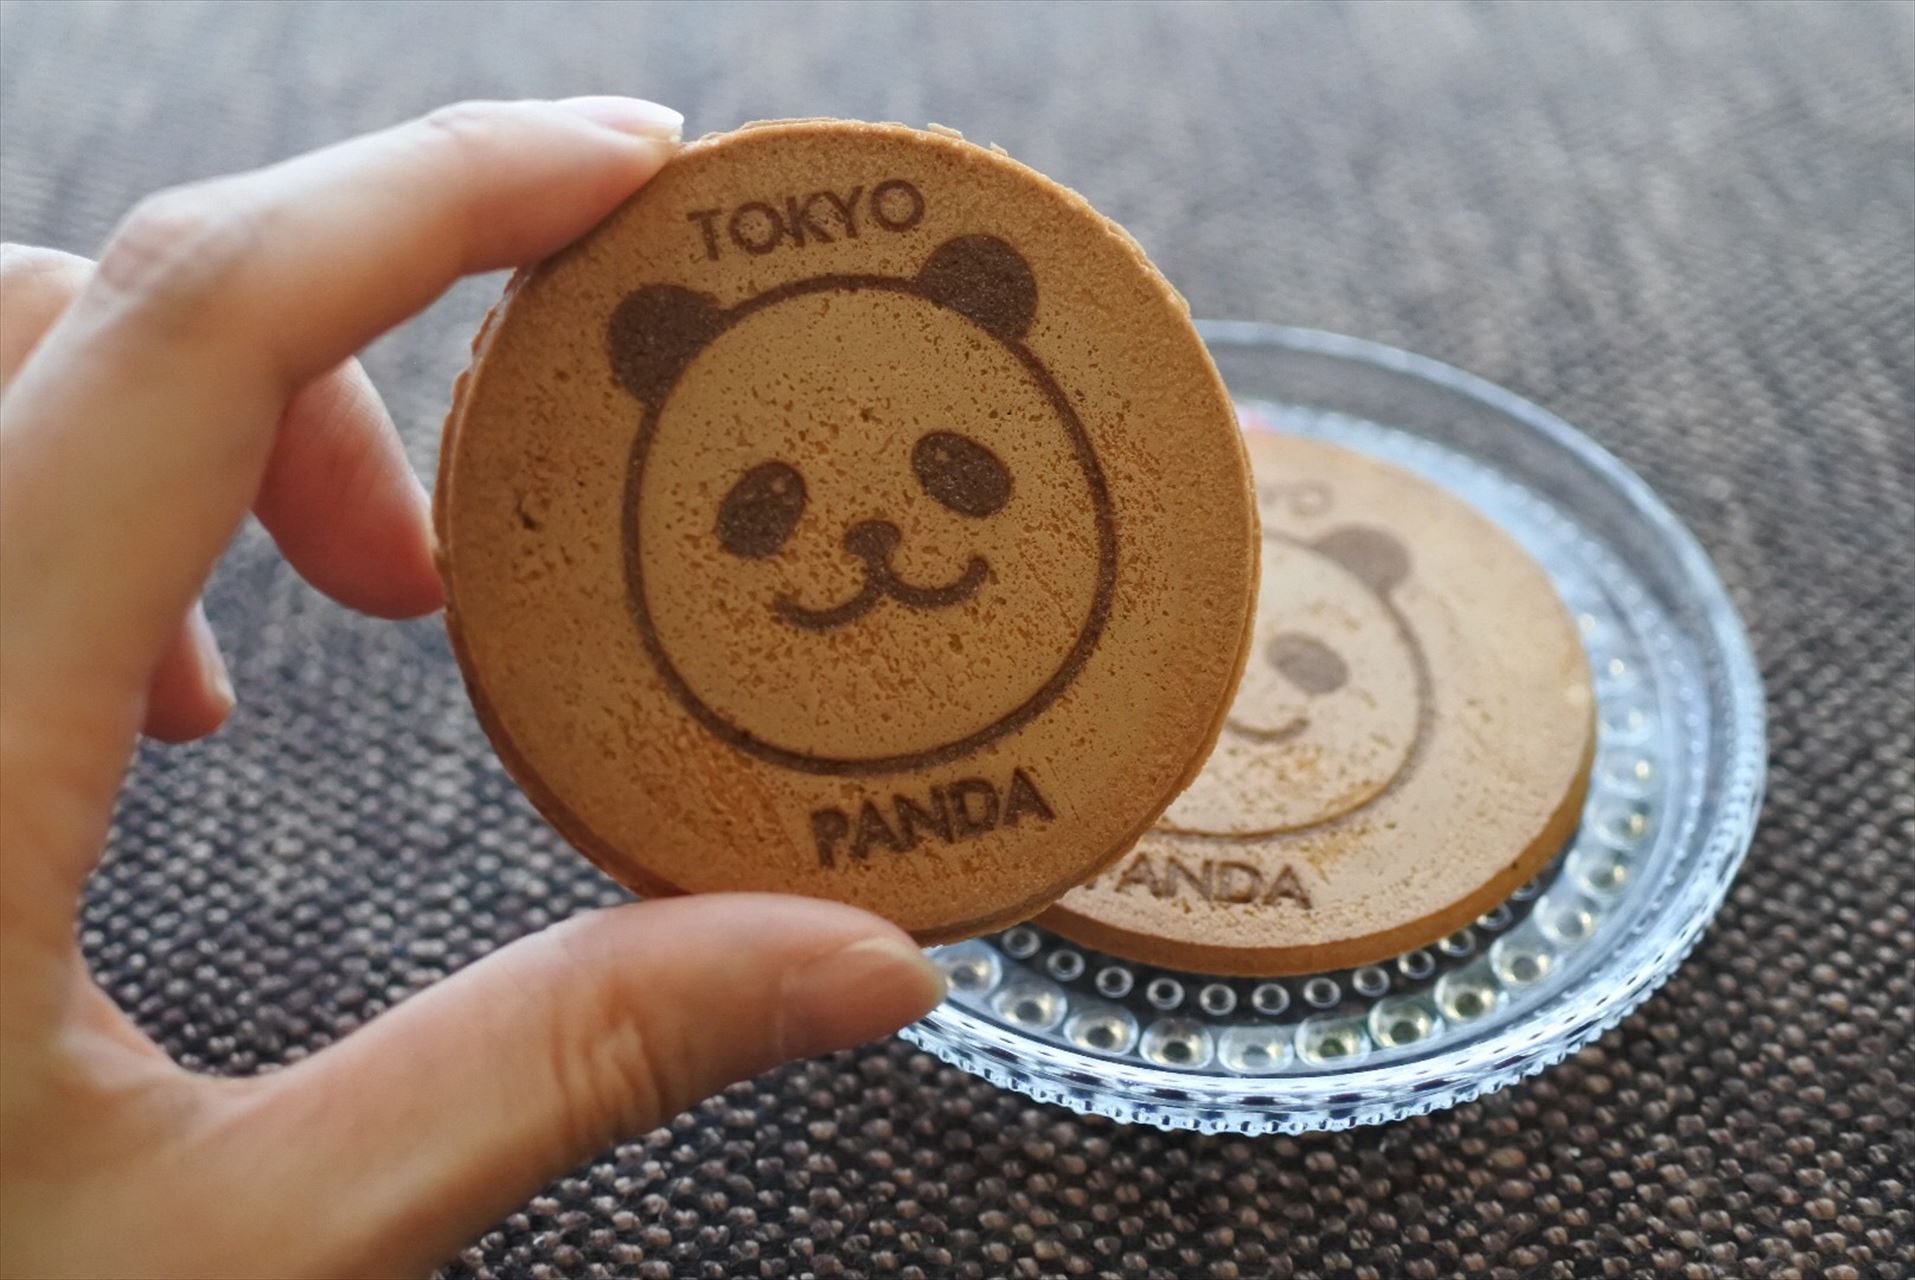 東京パンダクッキー